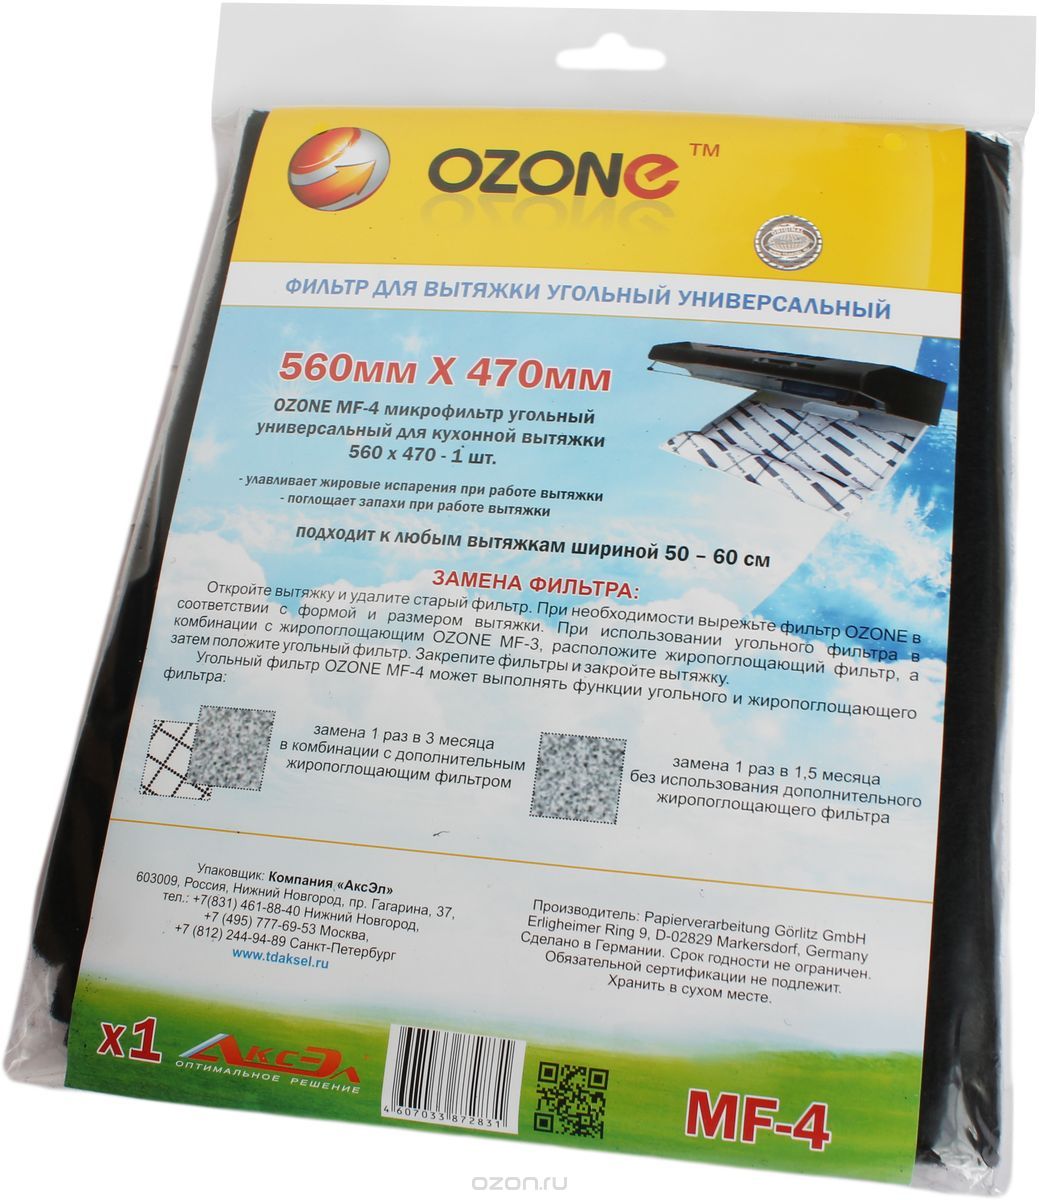  Ozone MF-4    